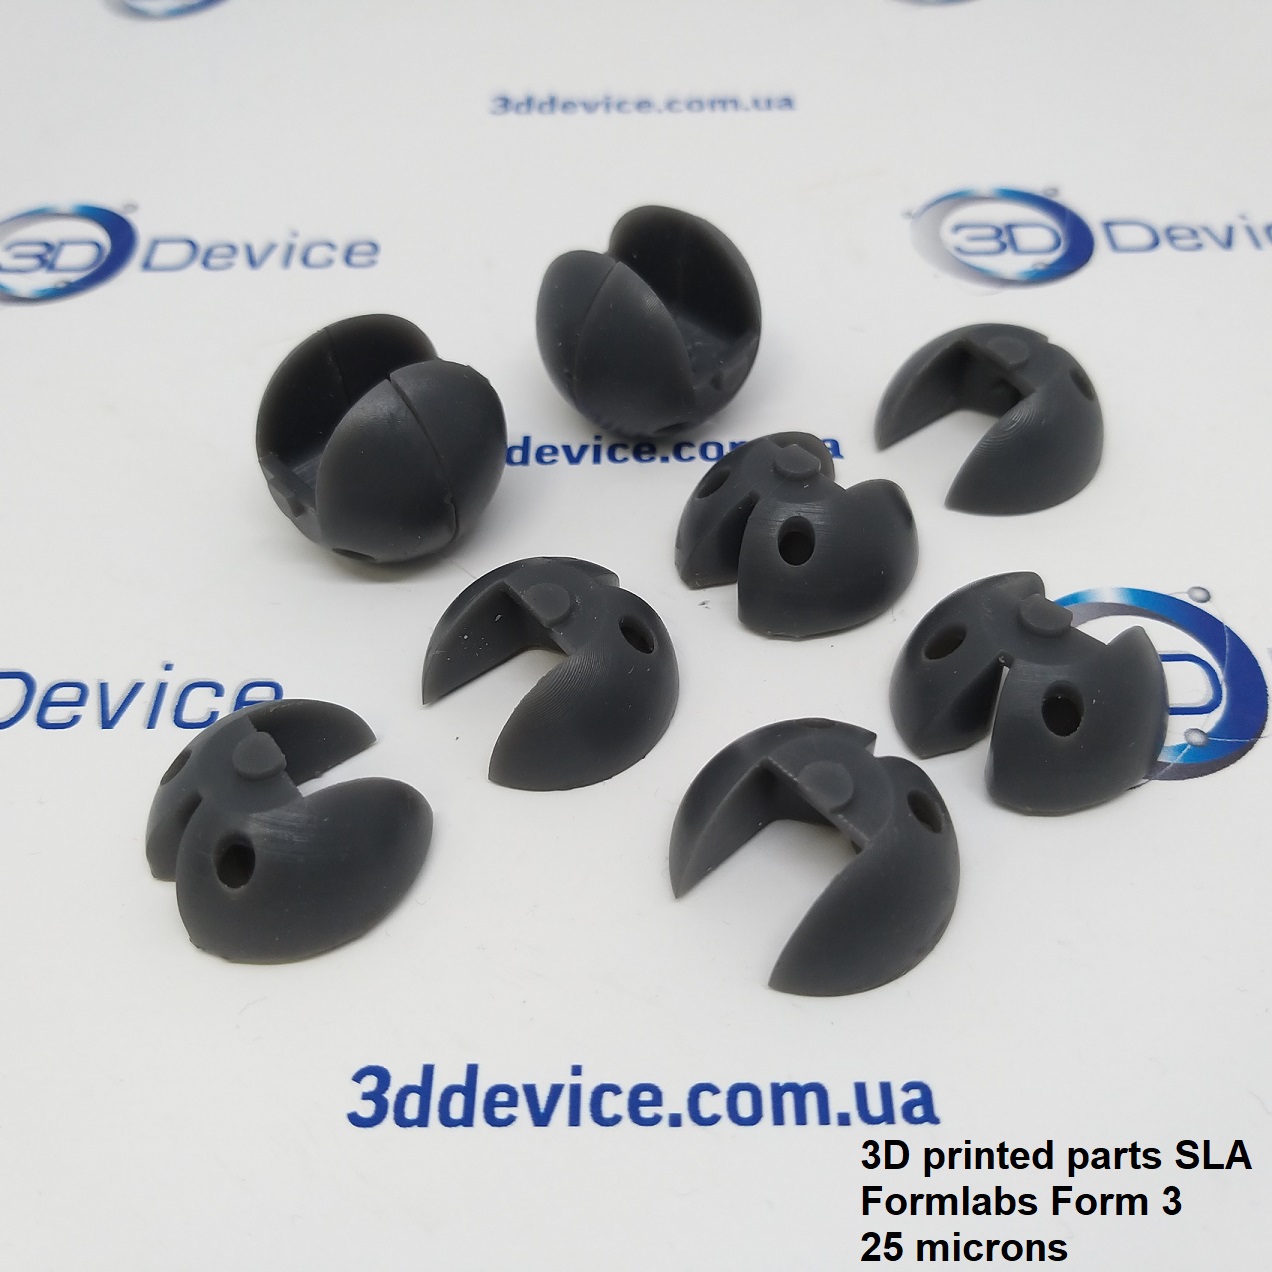 3D printing parts SLA